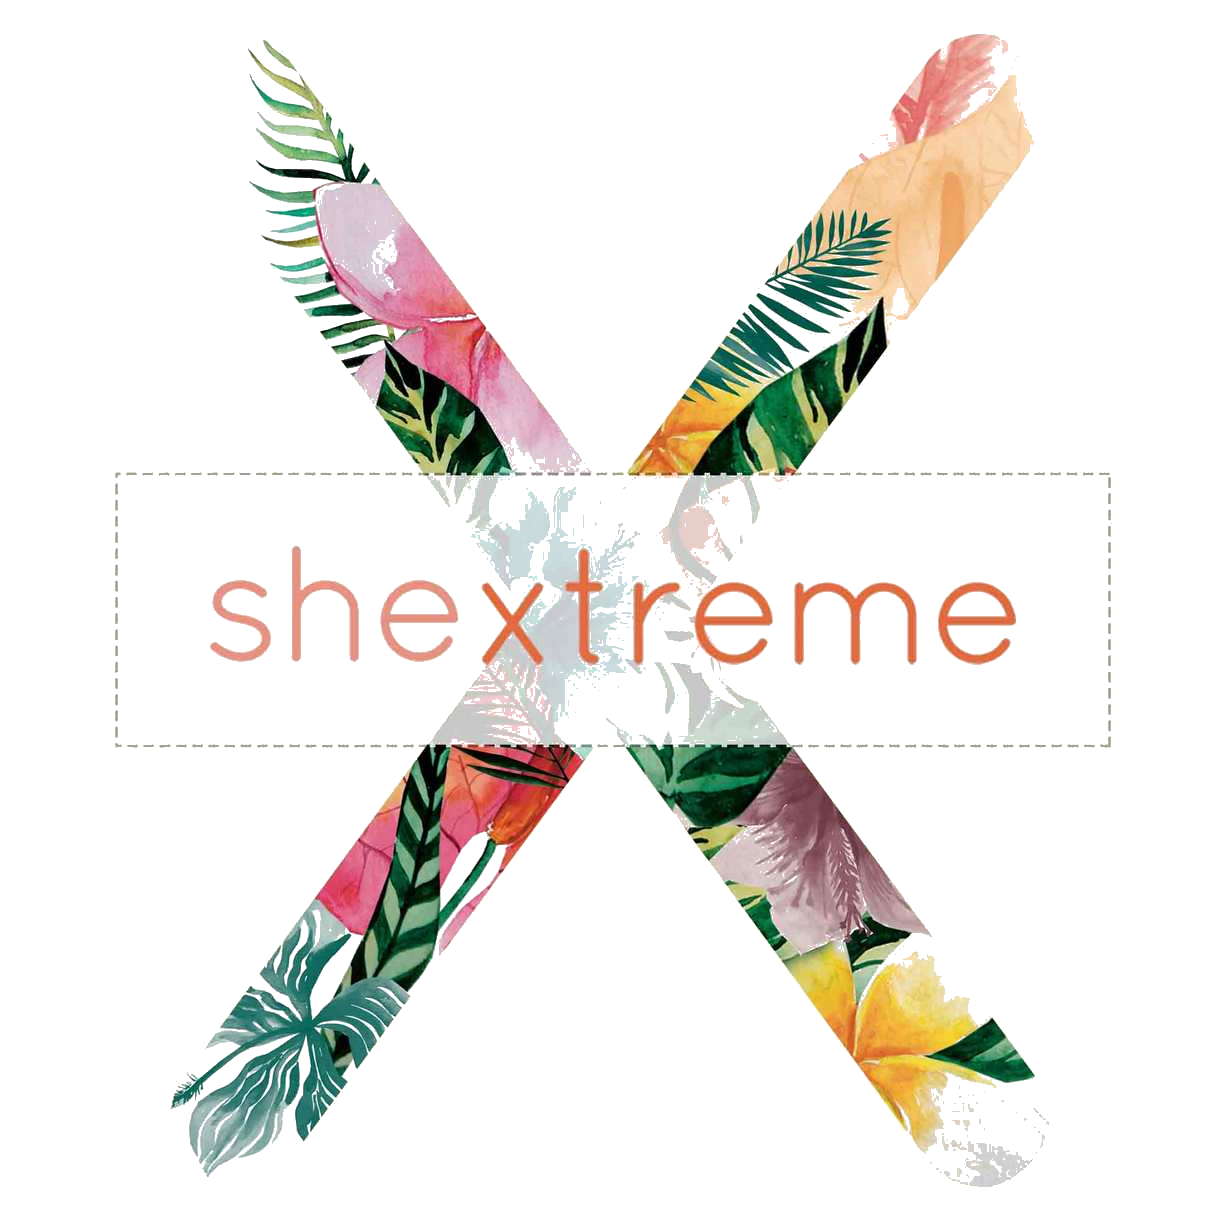 Shextreme